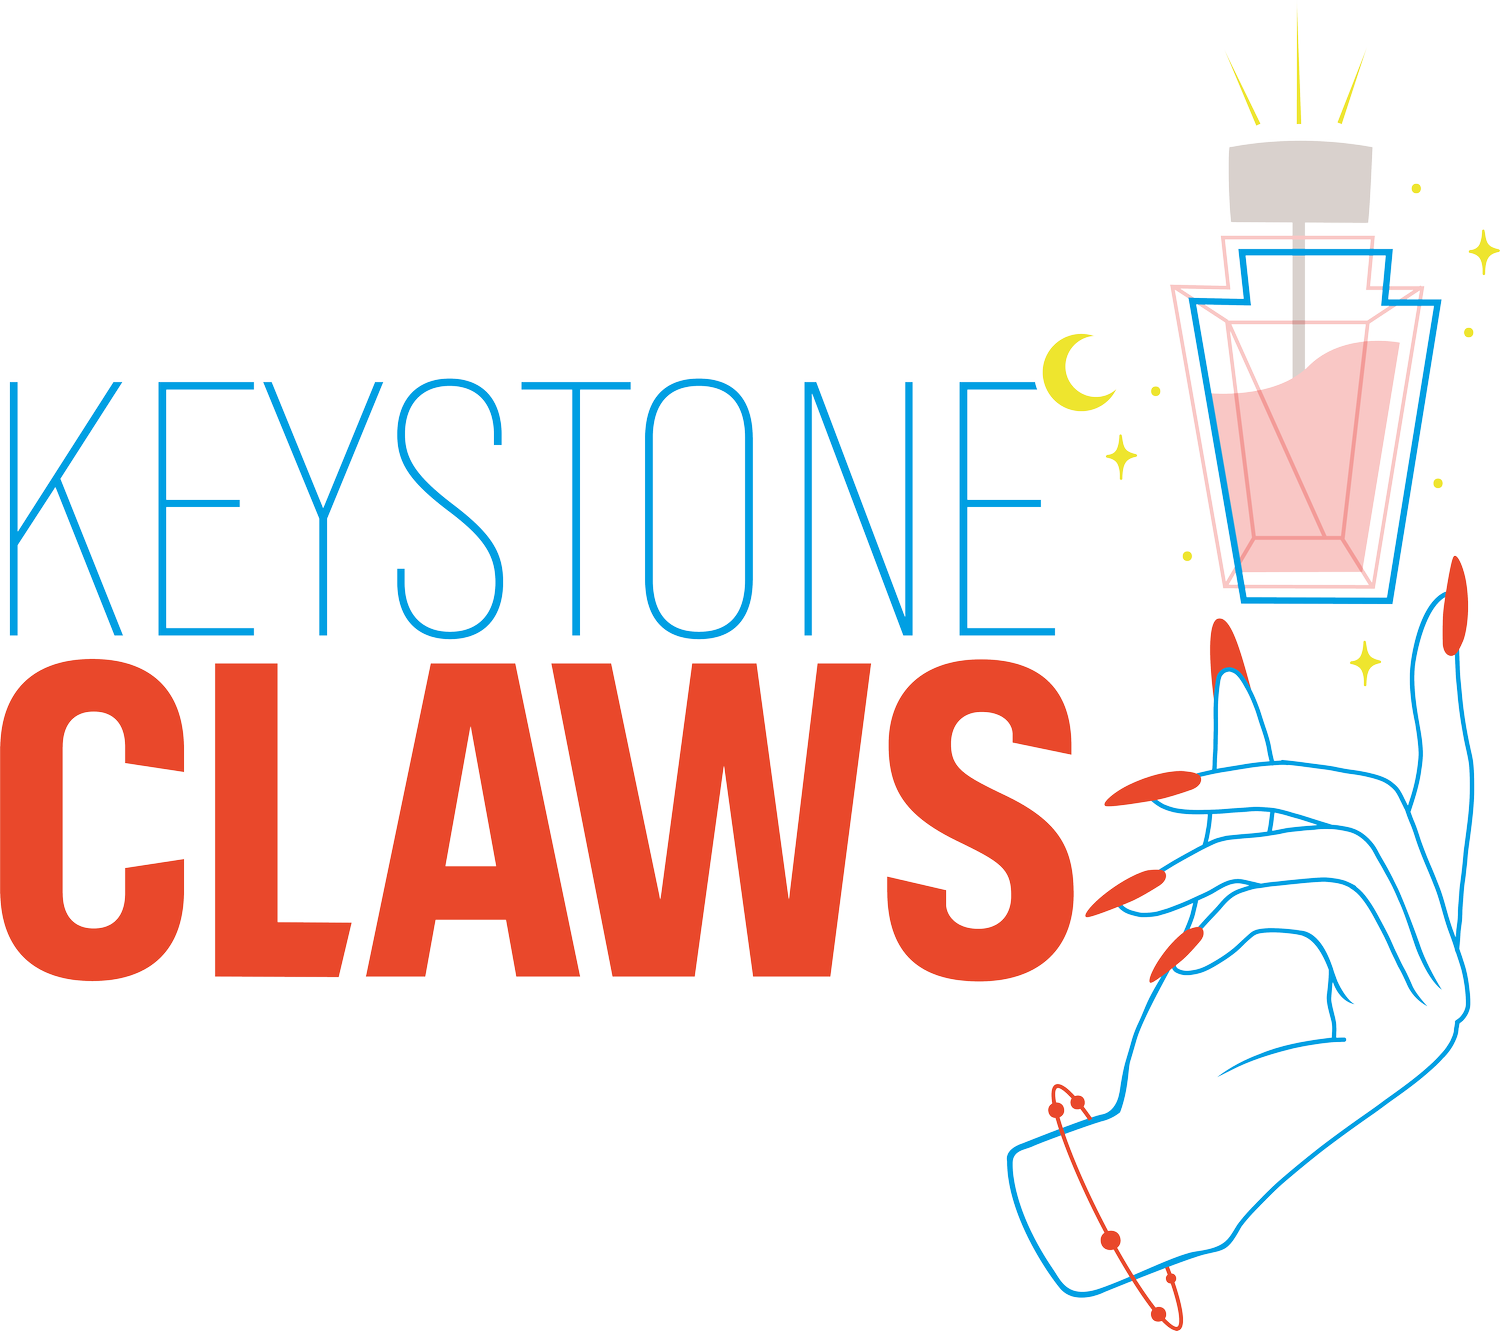 Keystone Claws